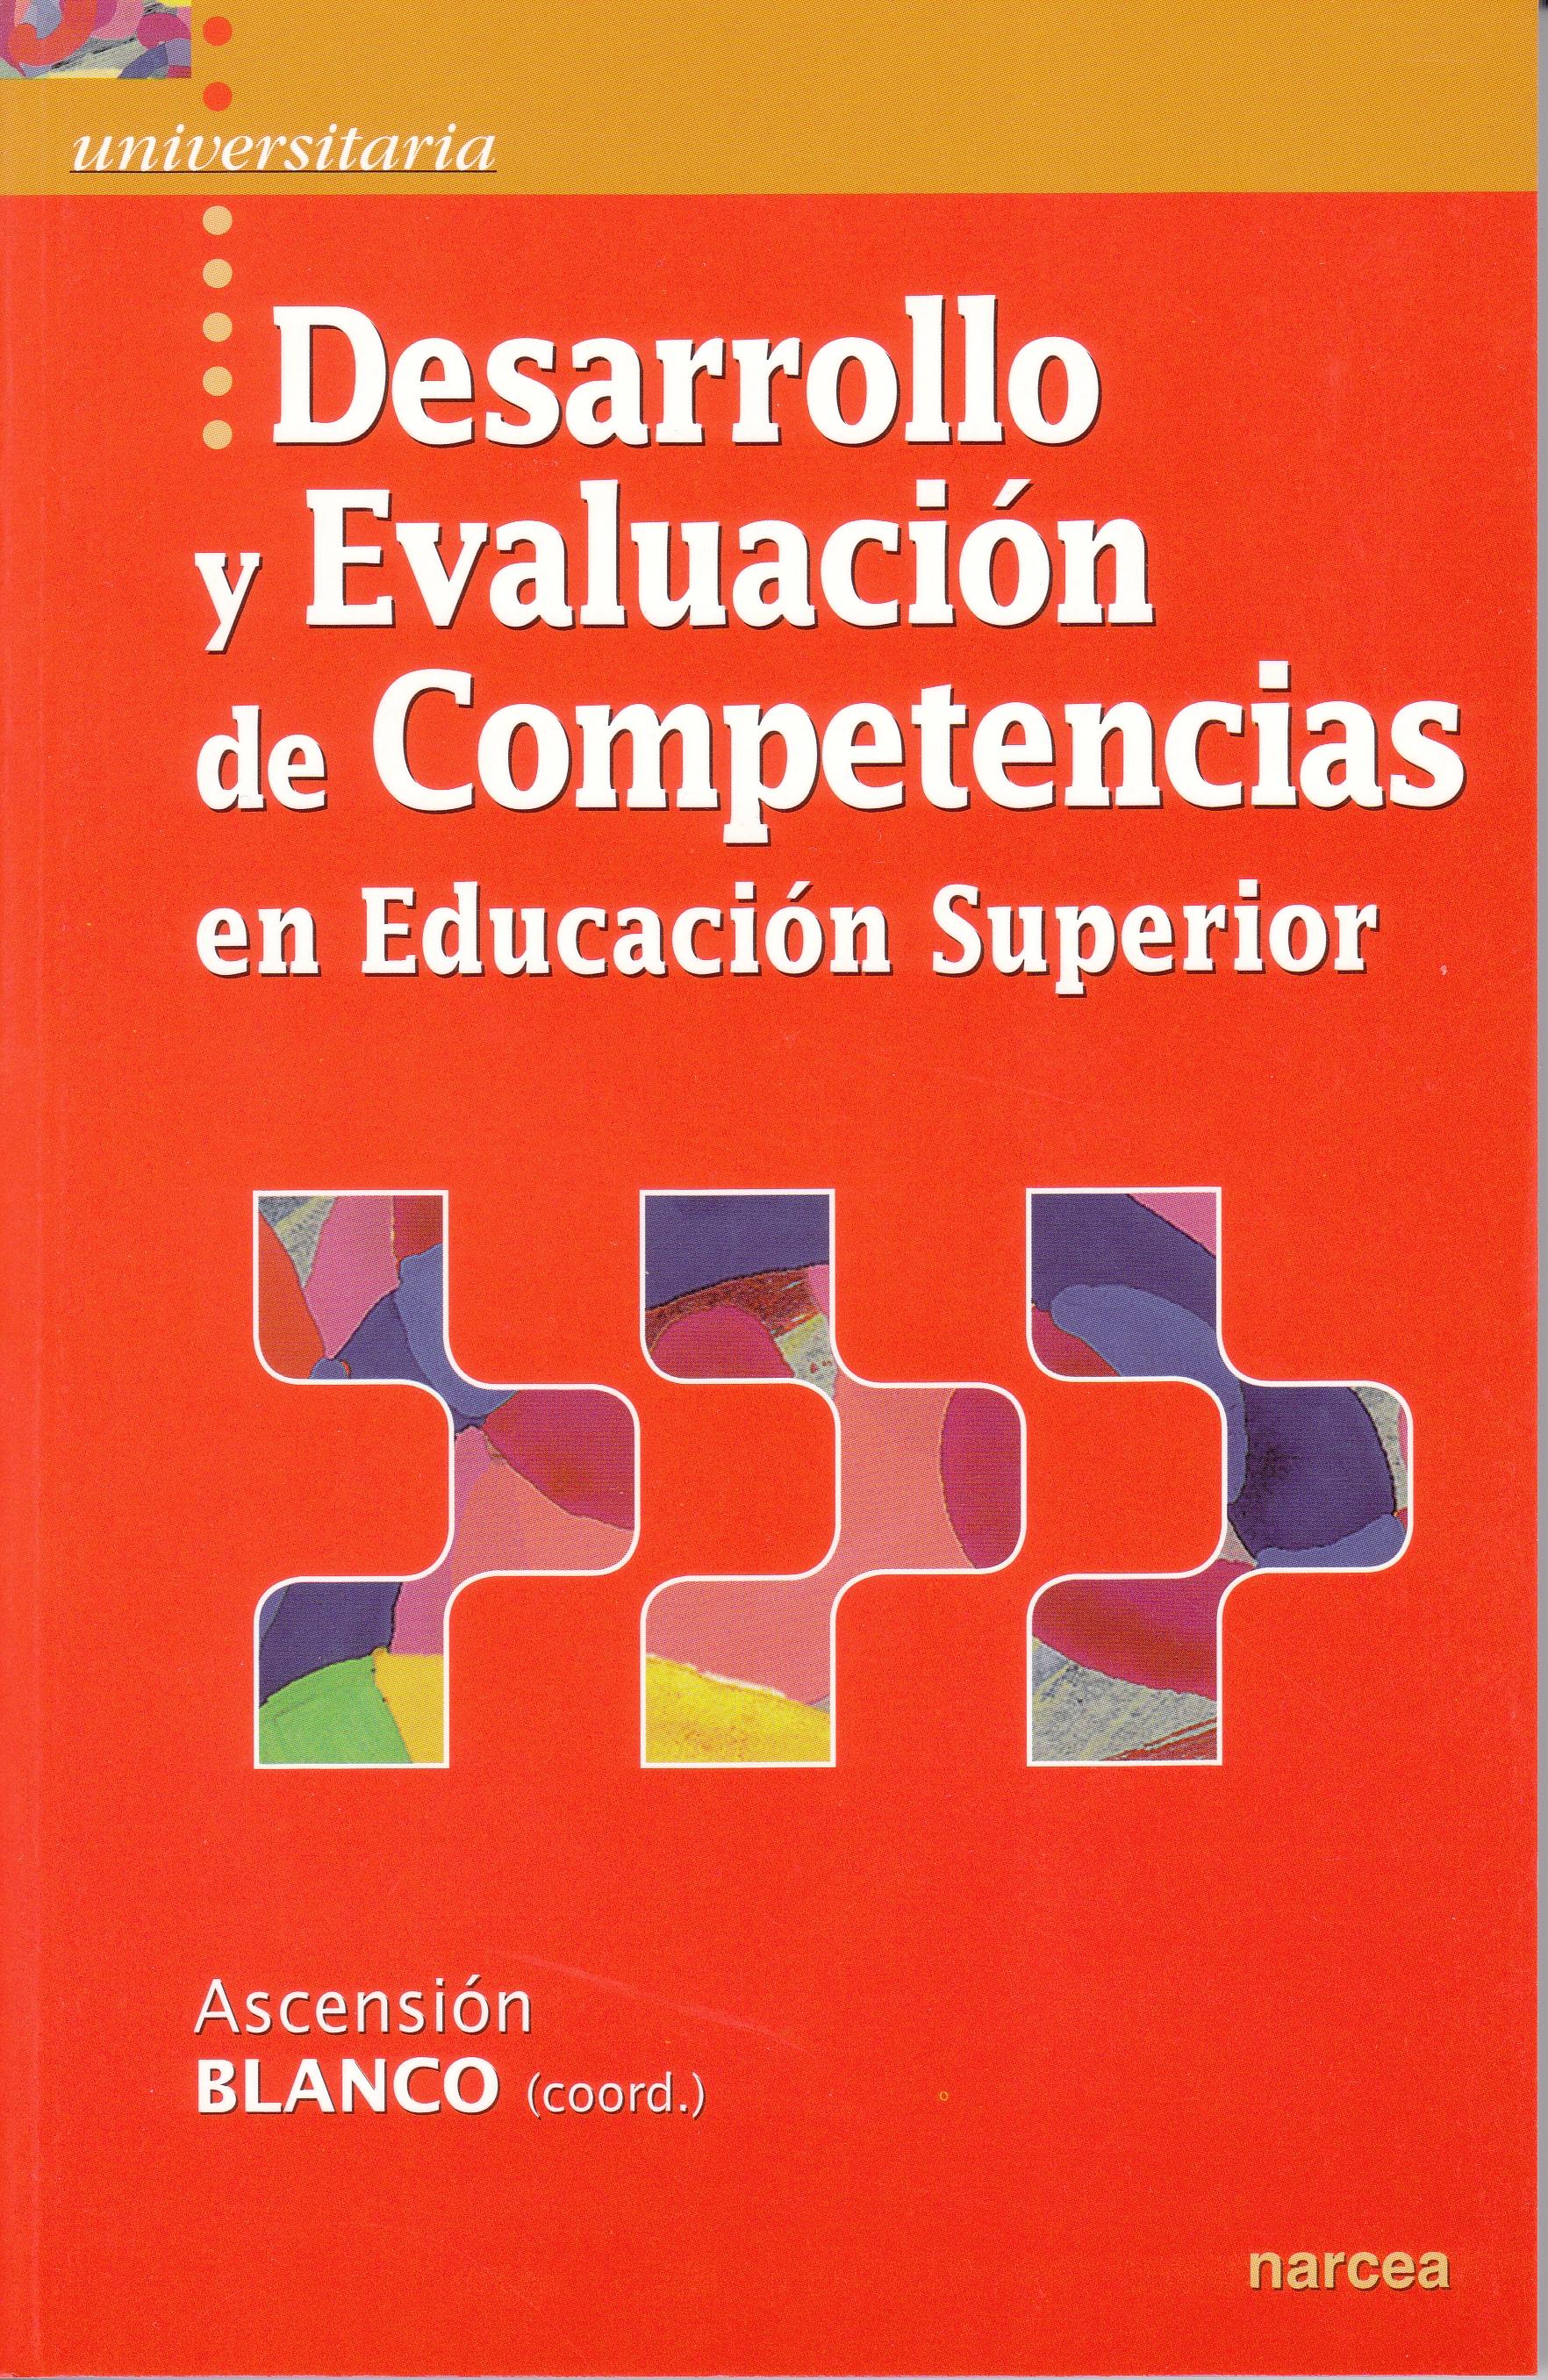 Desarrollo y Evaluacion de Competencias en Educacion Superior